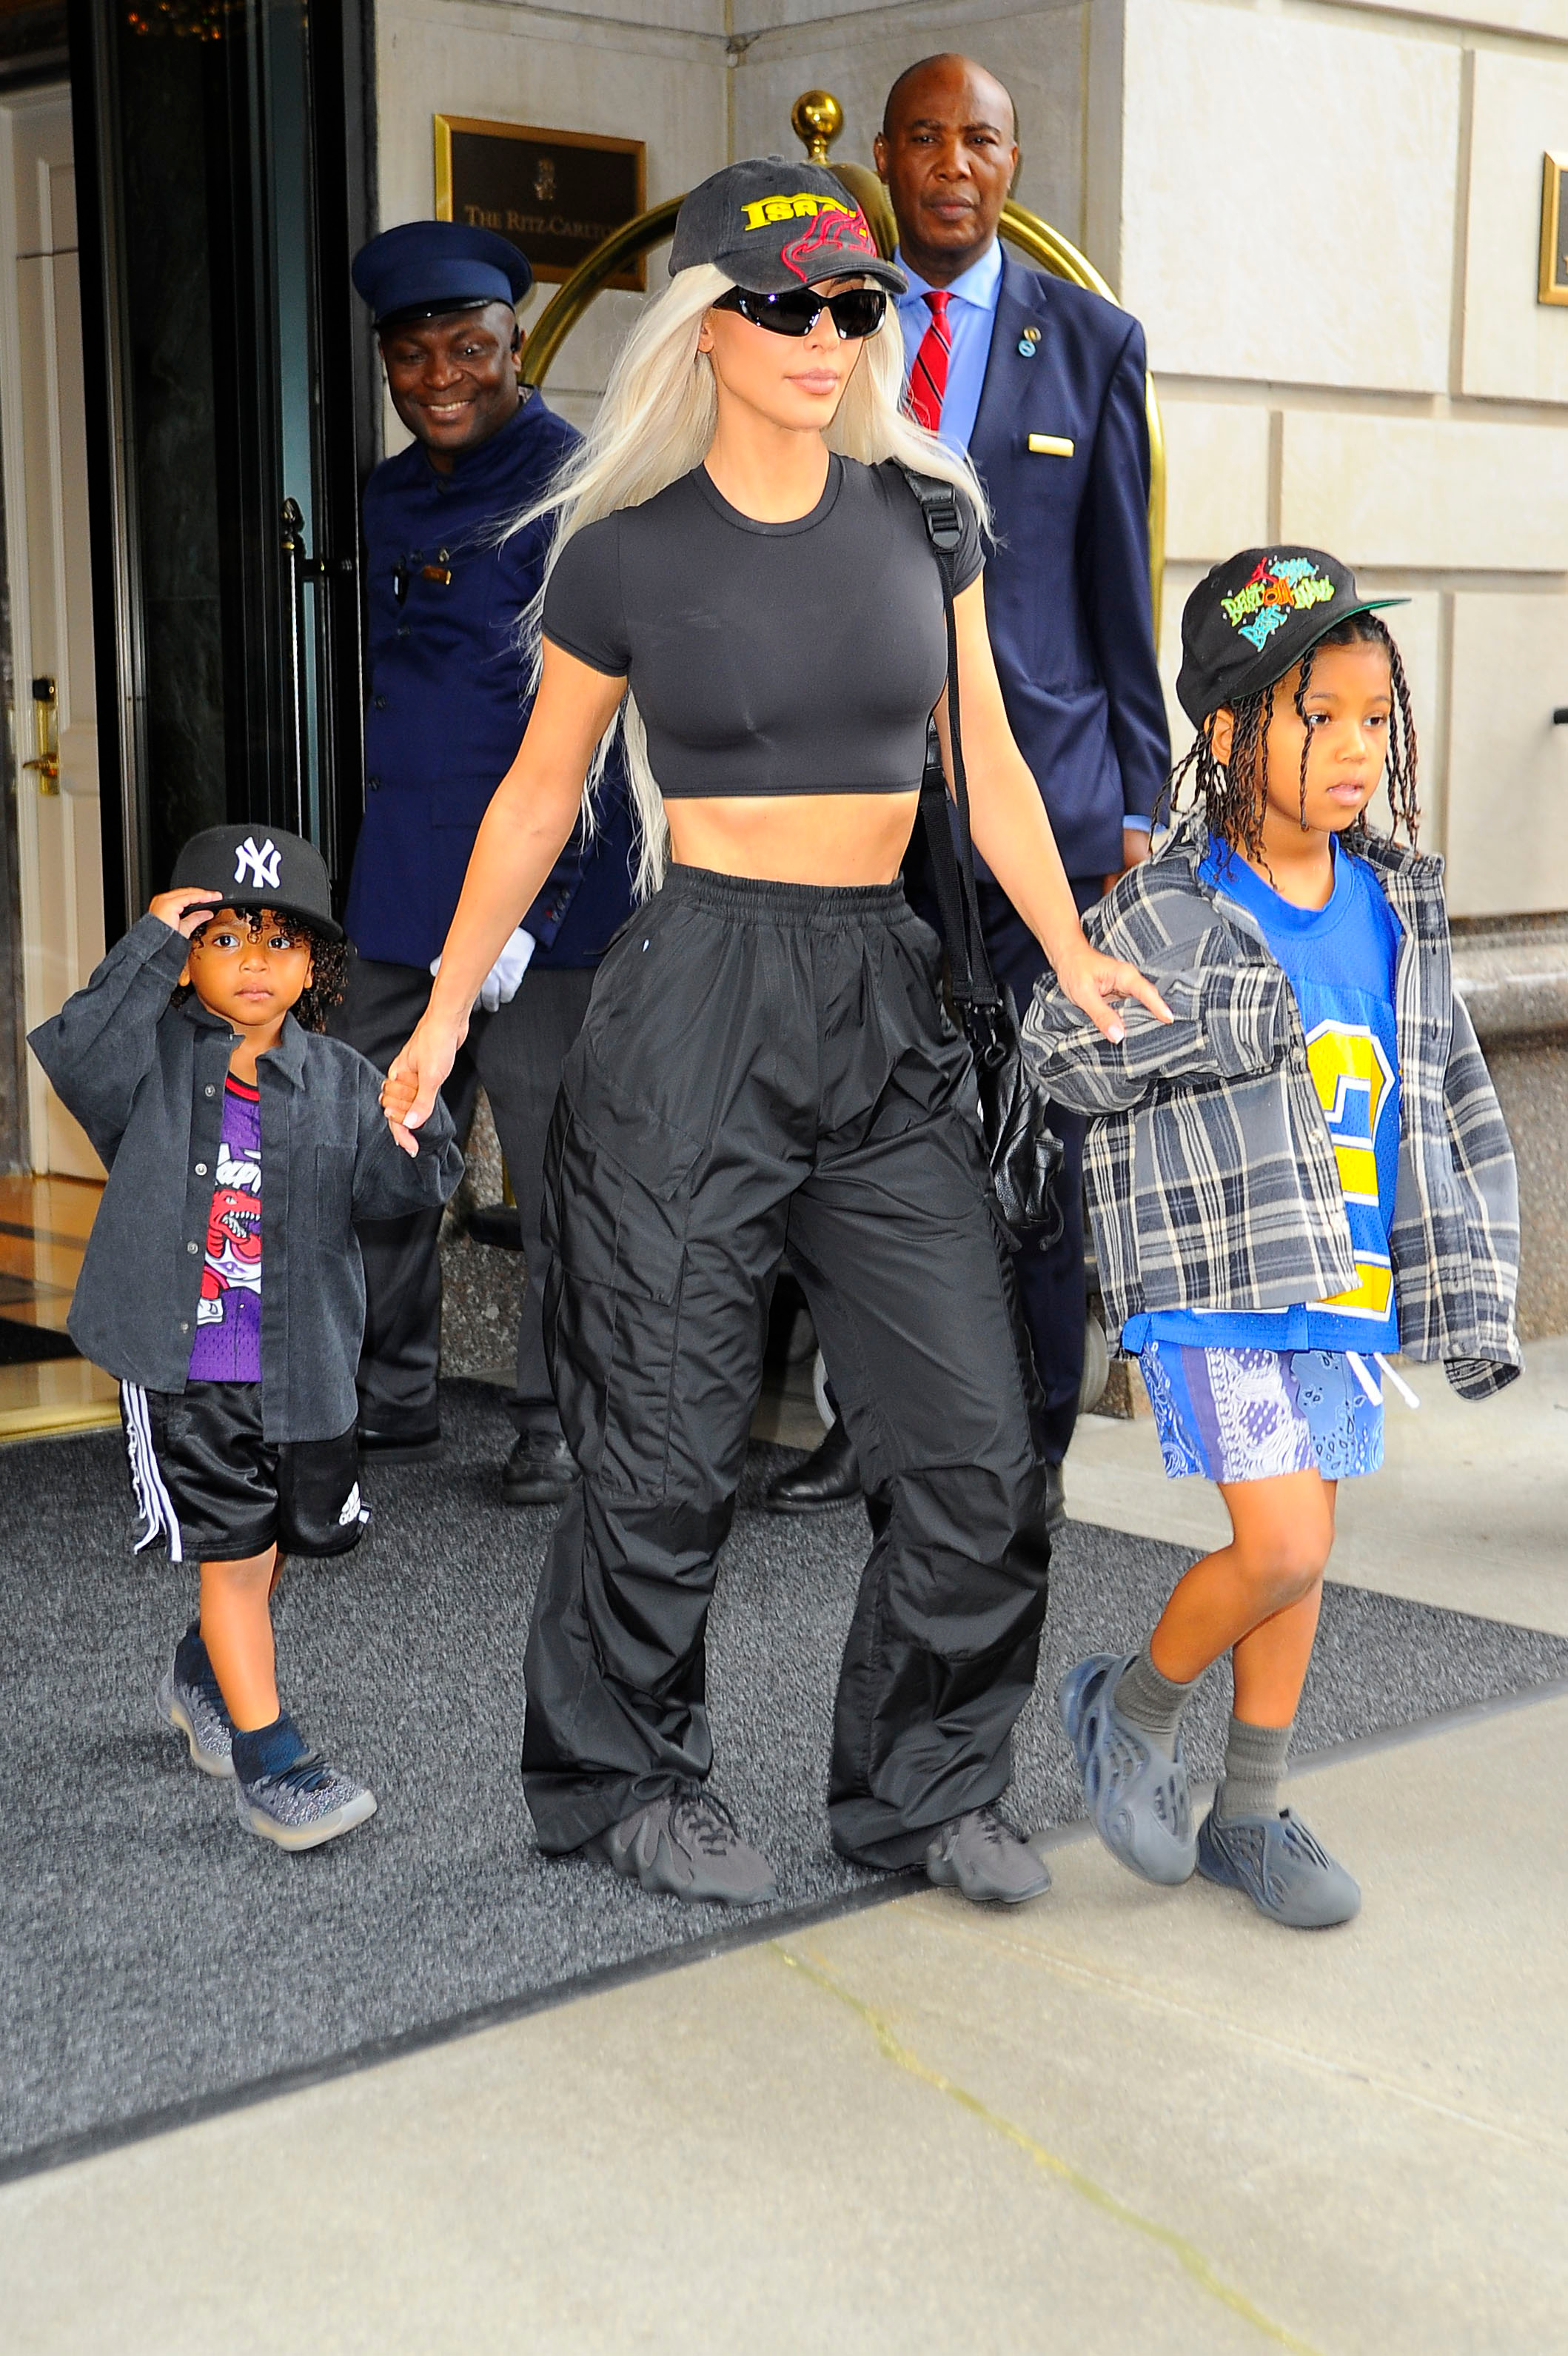 Kim Kardashian define la maternidad como el trabajo más gratificante
Photo © 2022 Splash News/The Grosby Group
